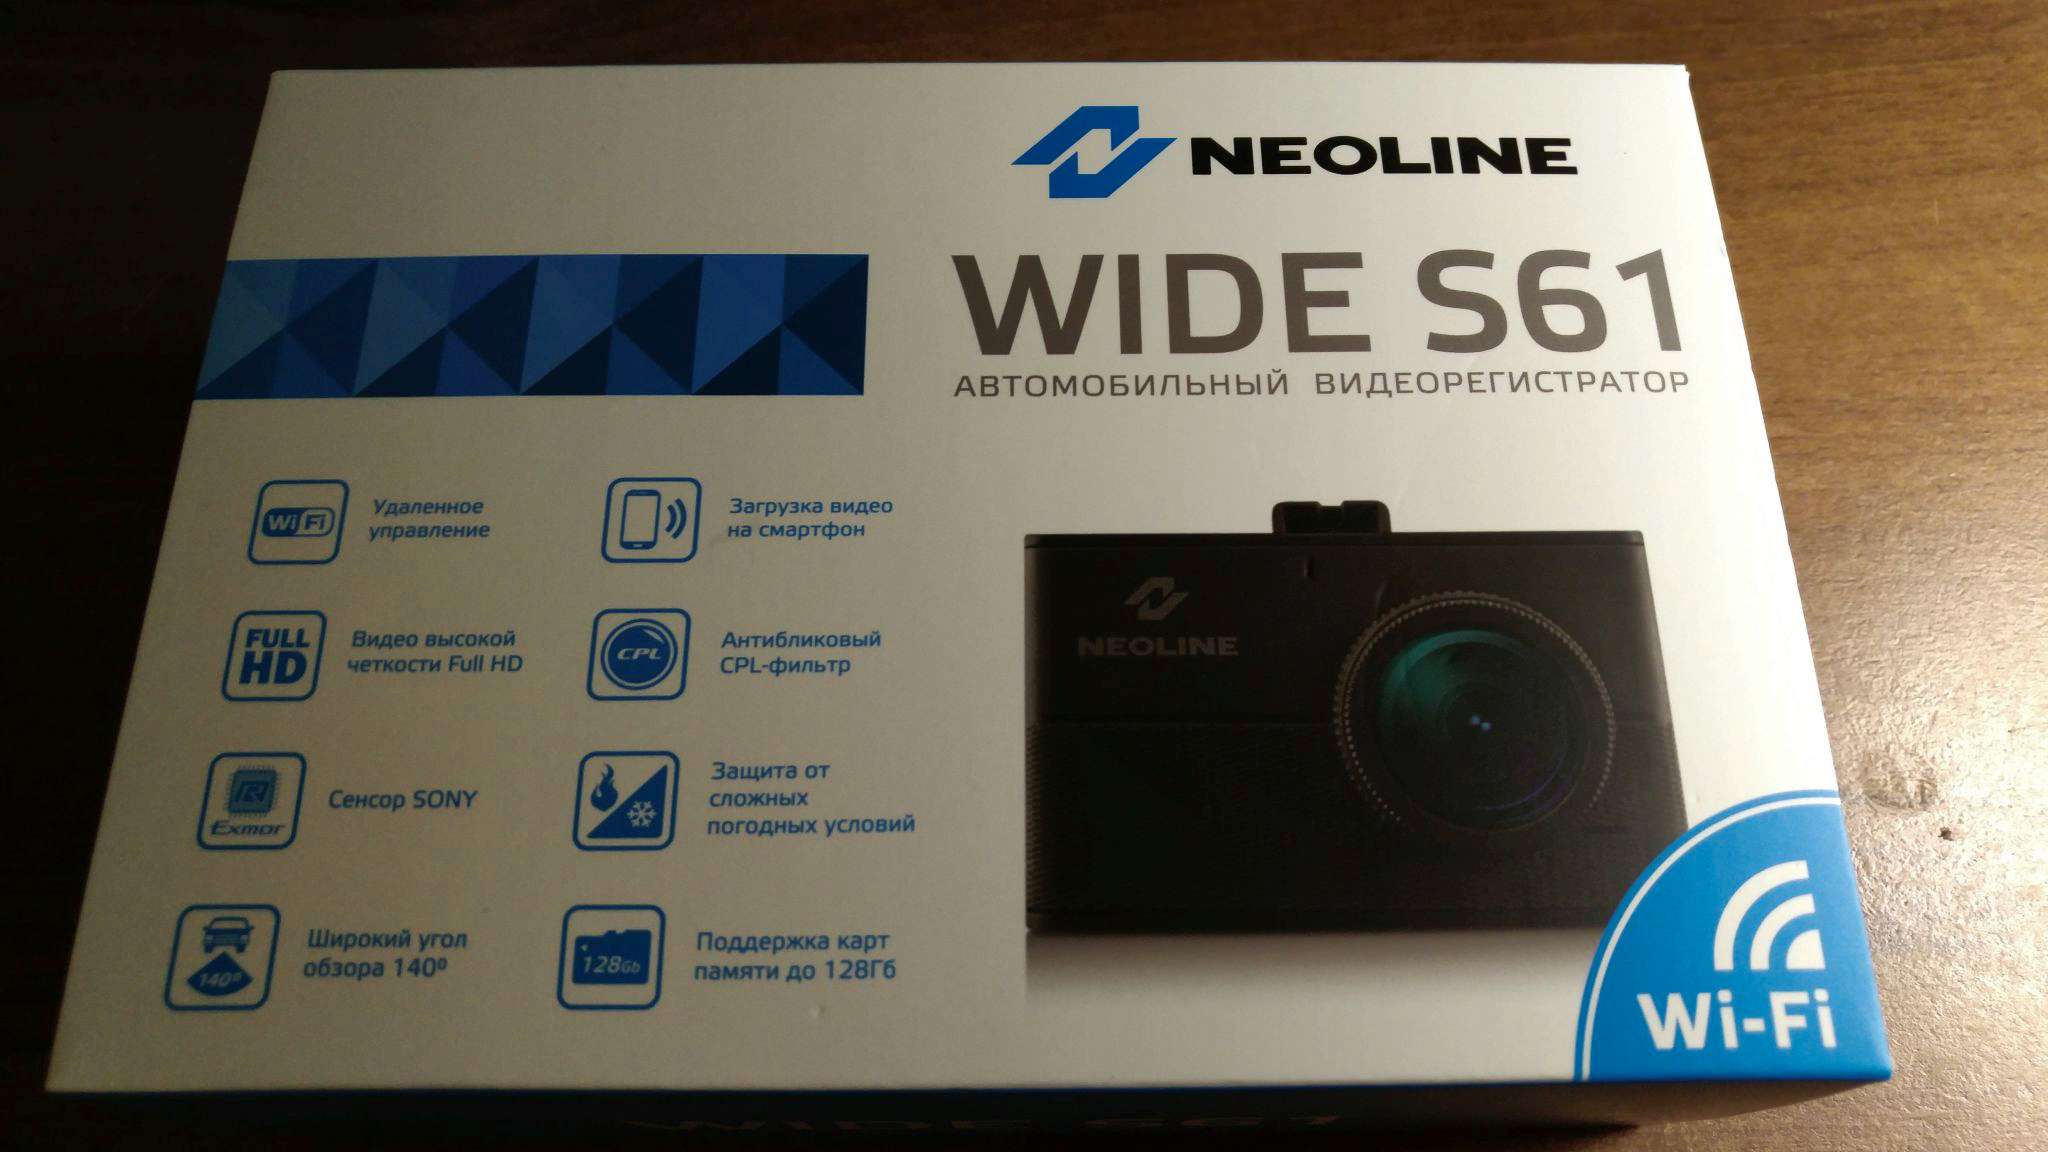 Neoline wide s61 WIFI